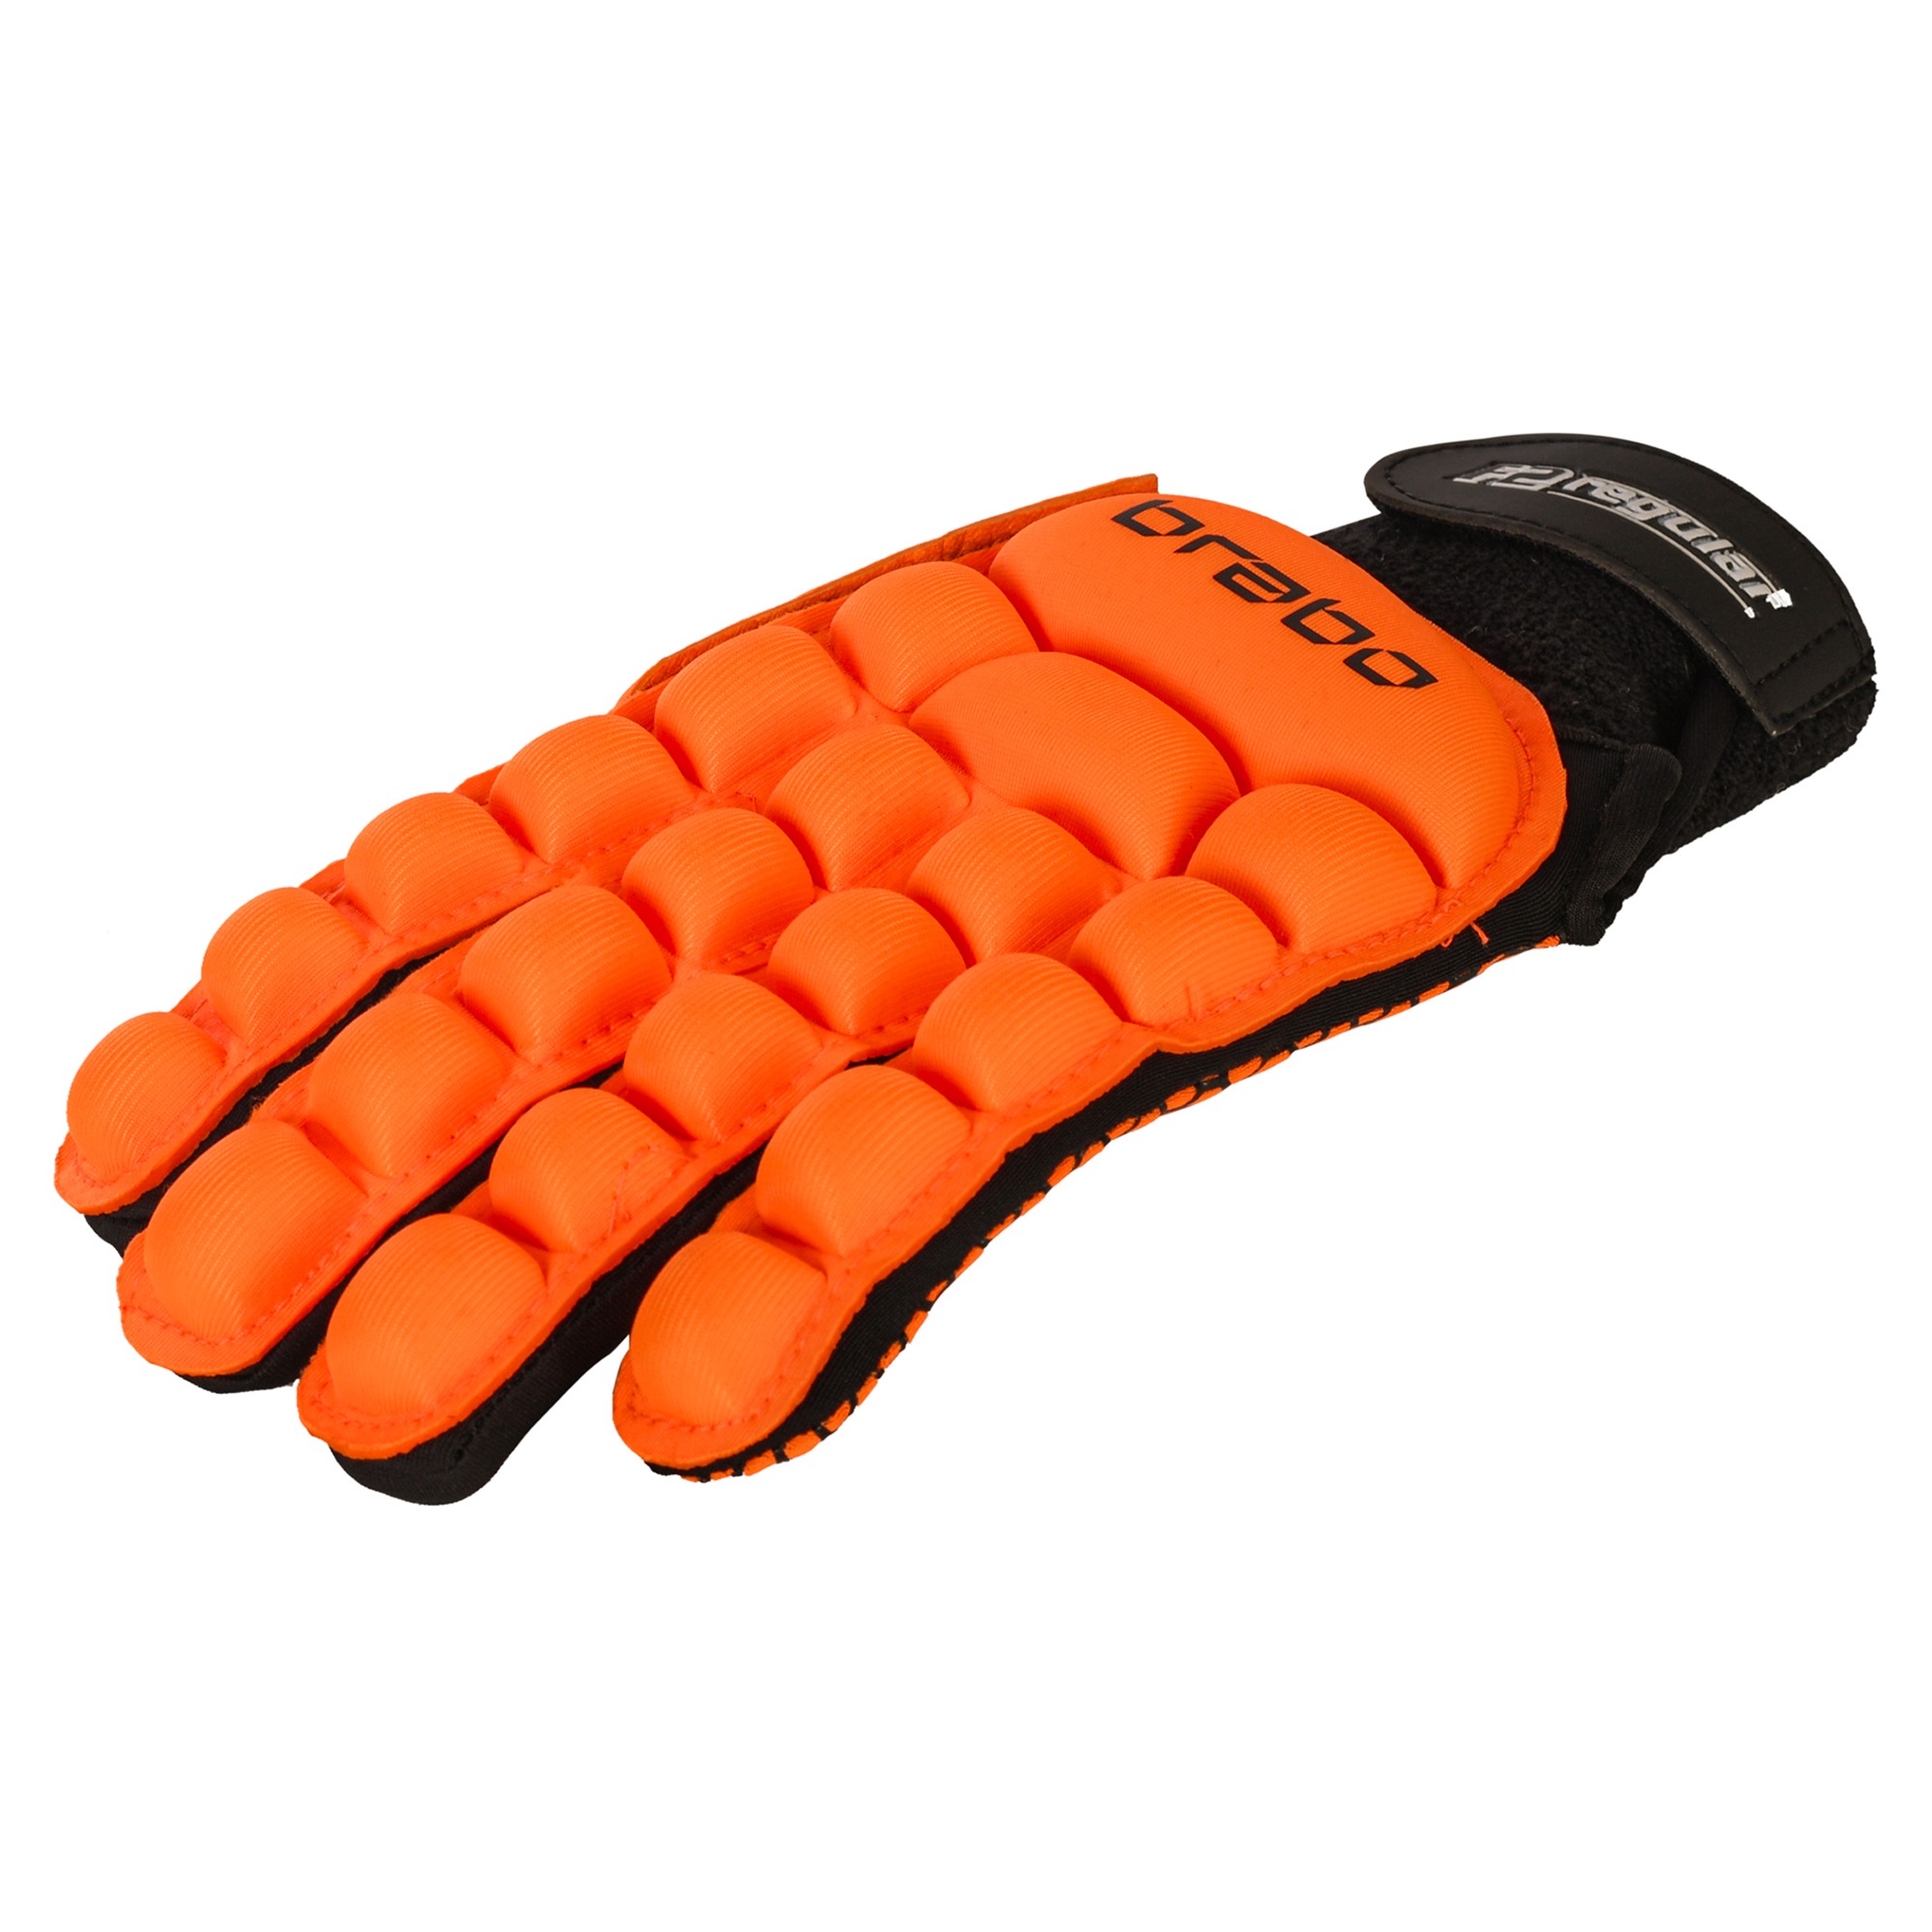 Gloves - Brabo hockey